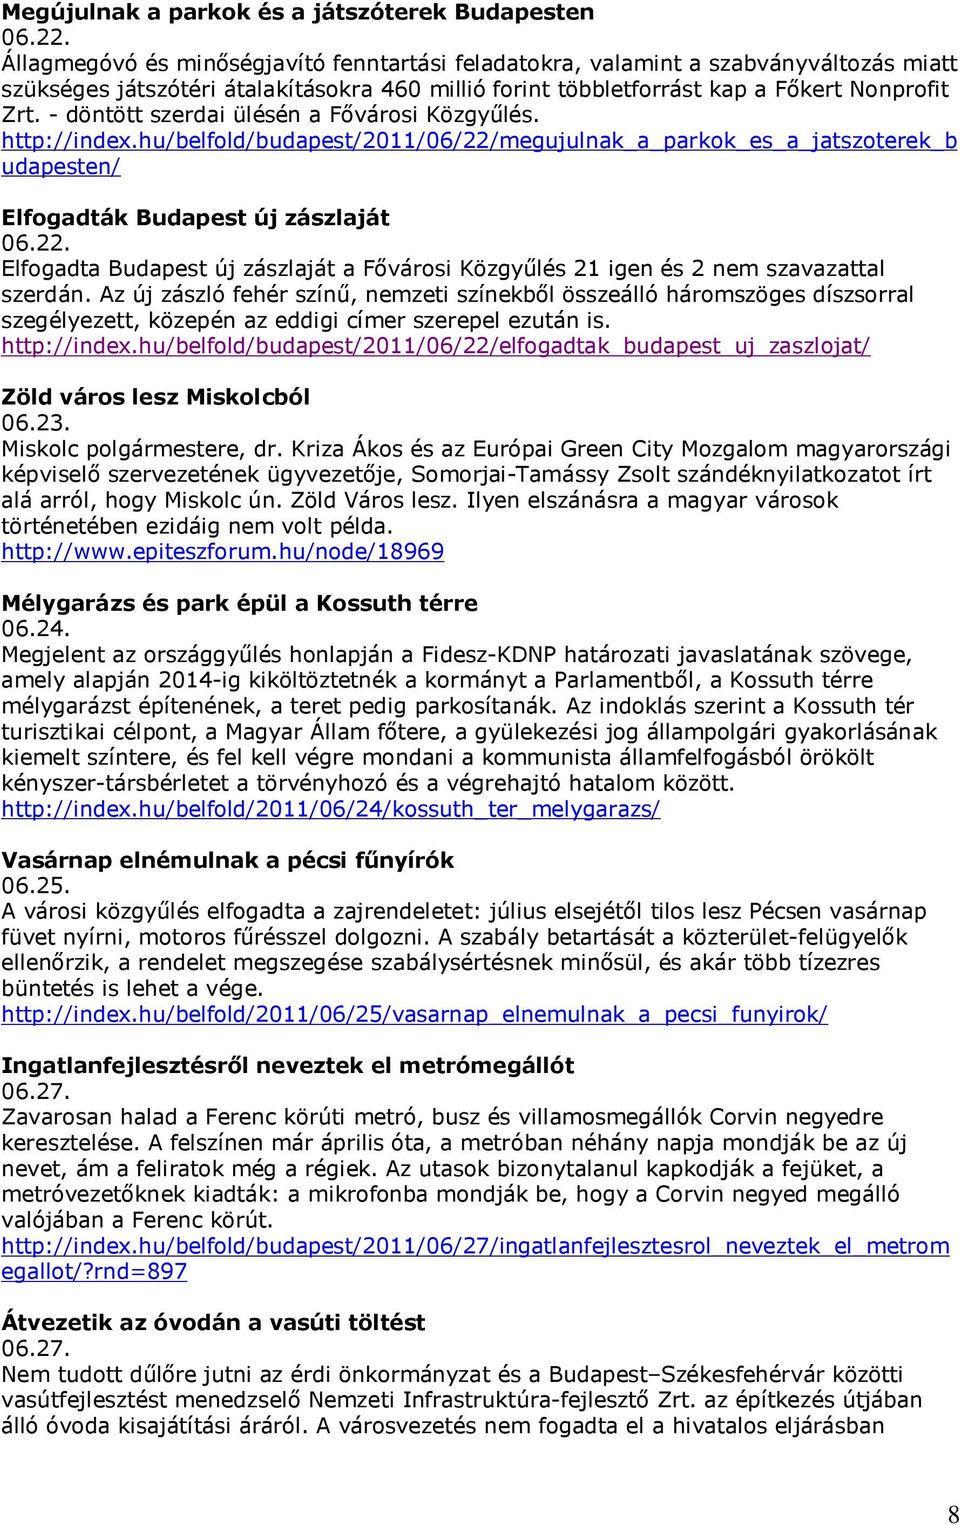 - döntött szerdai ülésén a Fővárosi Közgyűlés. http://index.hu/belfold/budapest/2011/06/22/megujulnak_a_parkok_es_a_jatszoterek_b udapesten/ Elfogadták Budapest új zászlaját 06.22. Elfogadta Budapest új zászlaját a Fővárosi Közgyűlés 21 igen és 2 nem szavazattal szerdán.